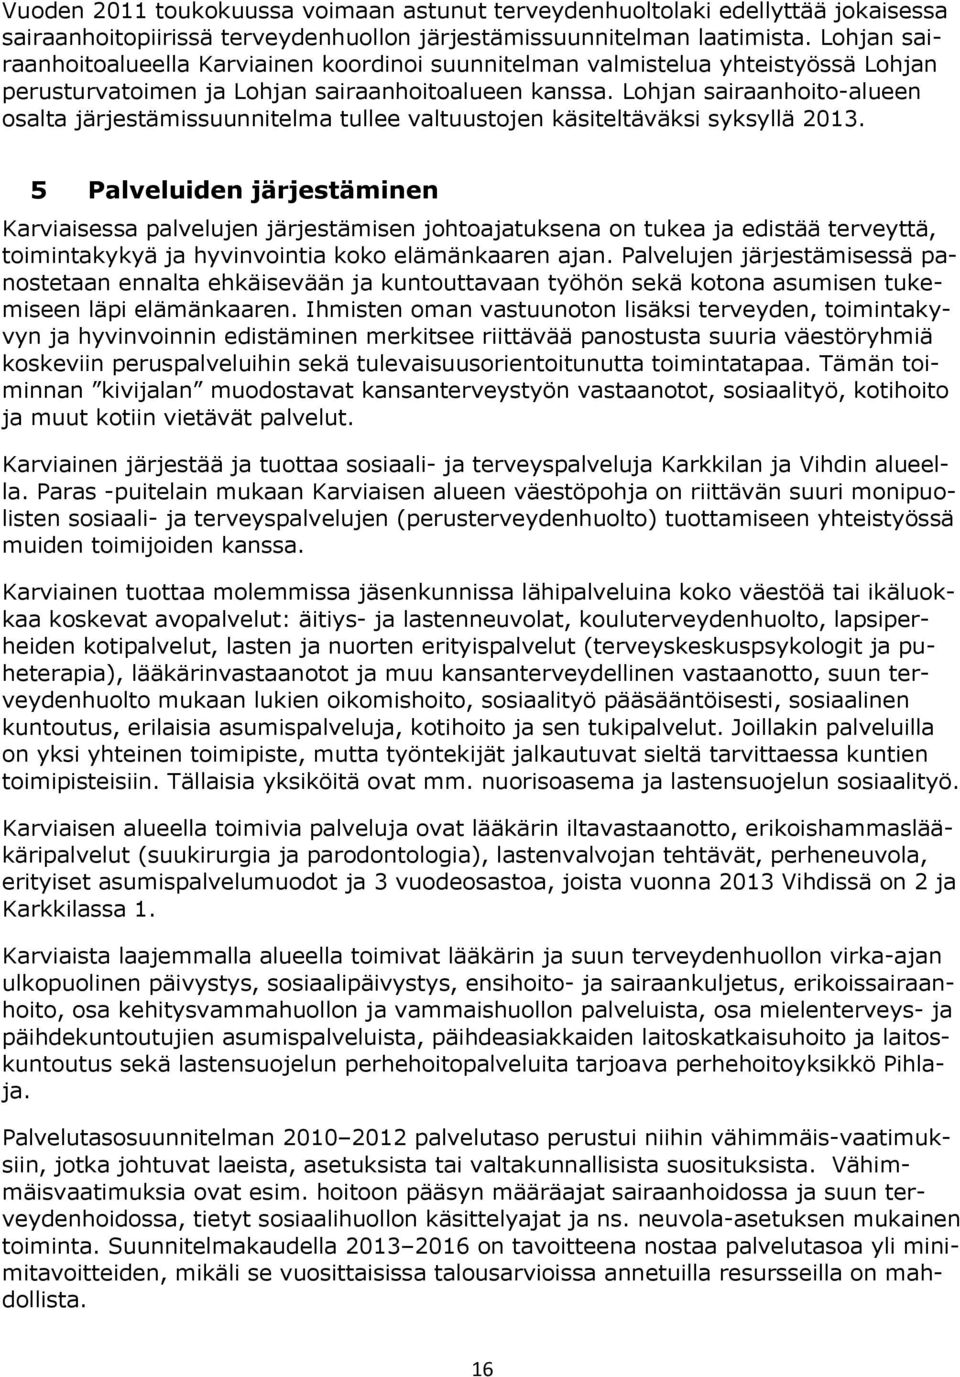 Lohjan sairaanhoito-alueen osalta järjestämissuunnitelma tullee valtuustojen käsiteltäväksi syksyllä 2013.